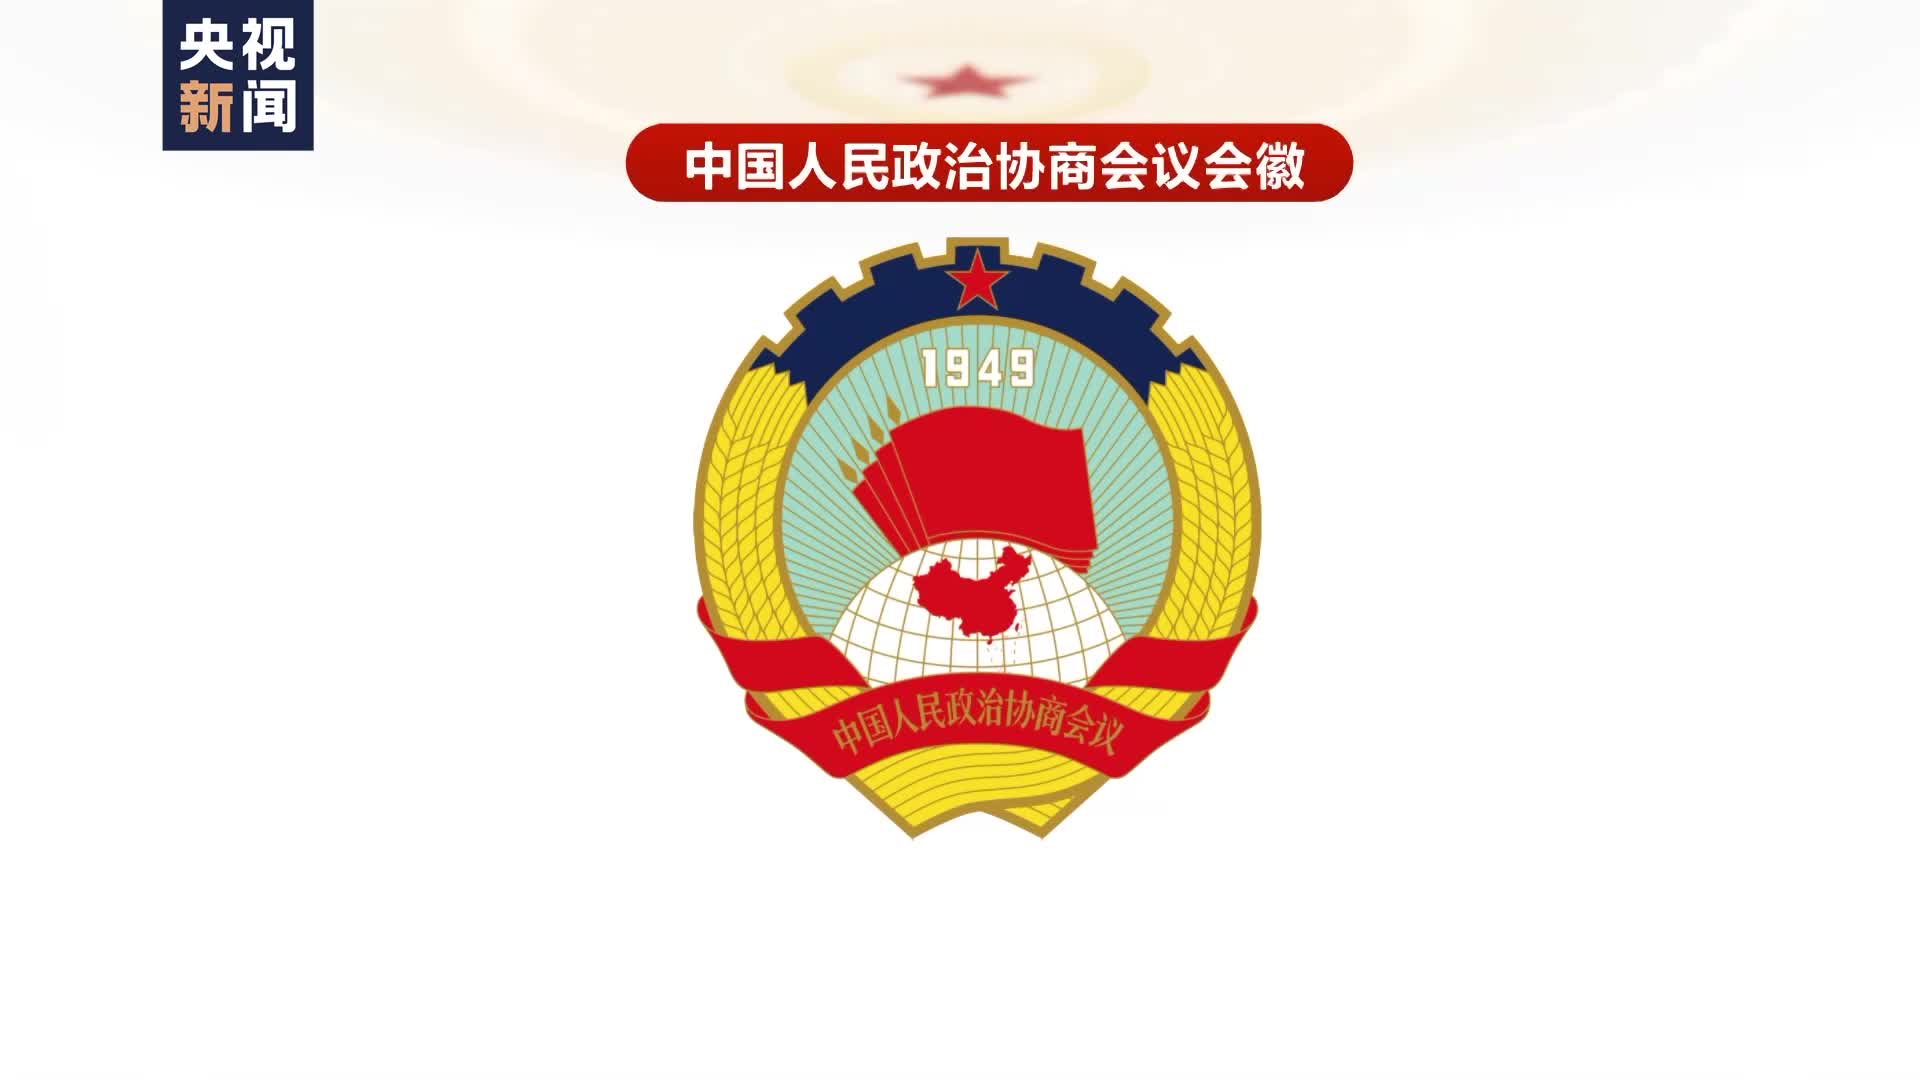 政协会徽 矢量图片